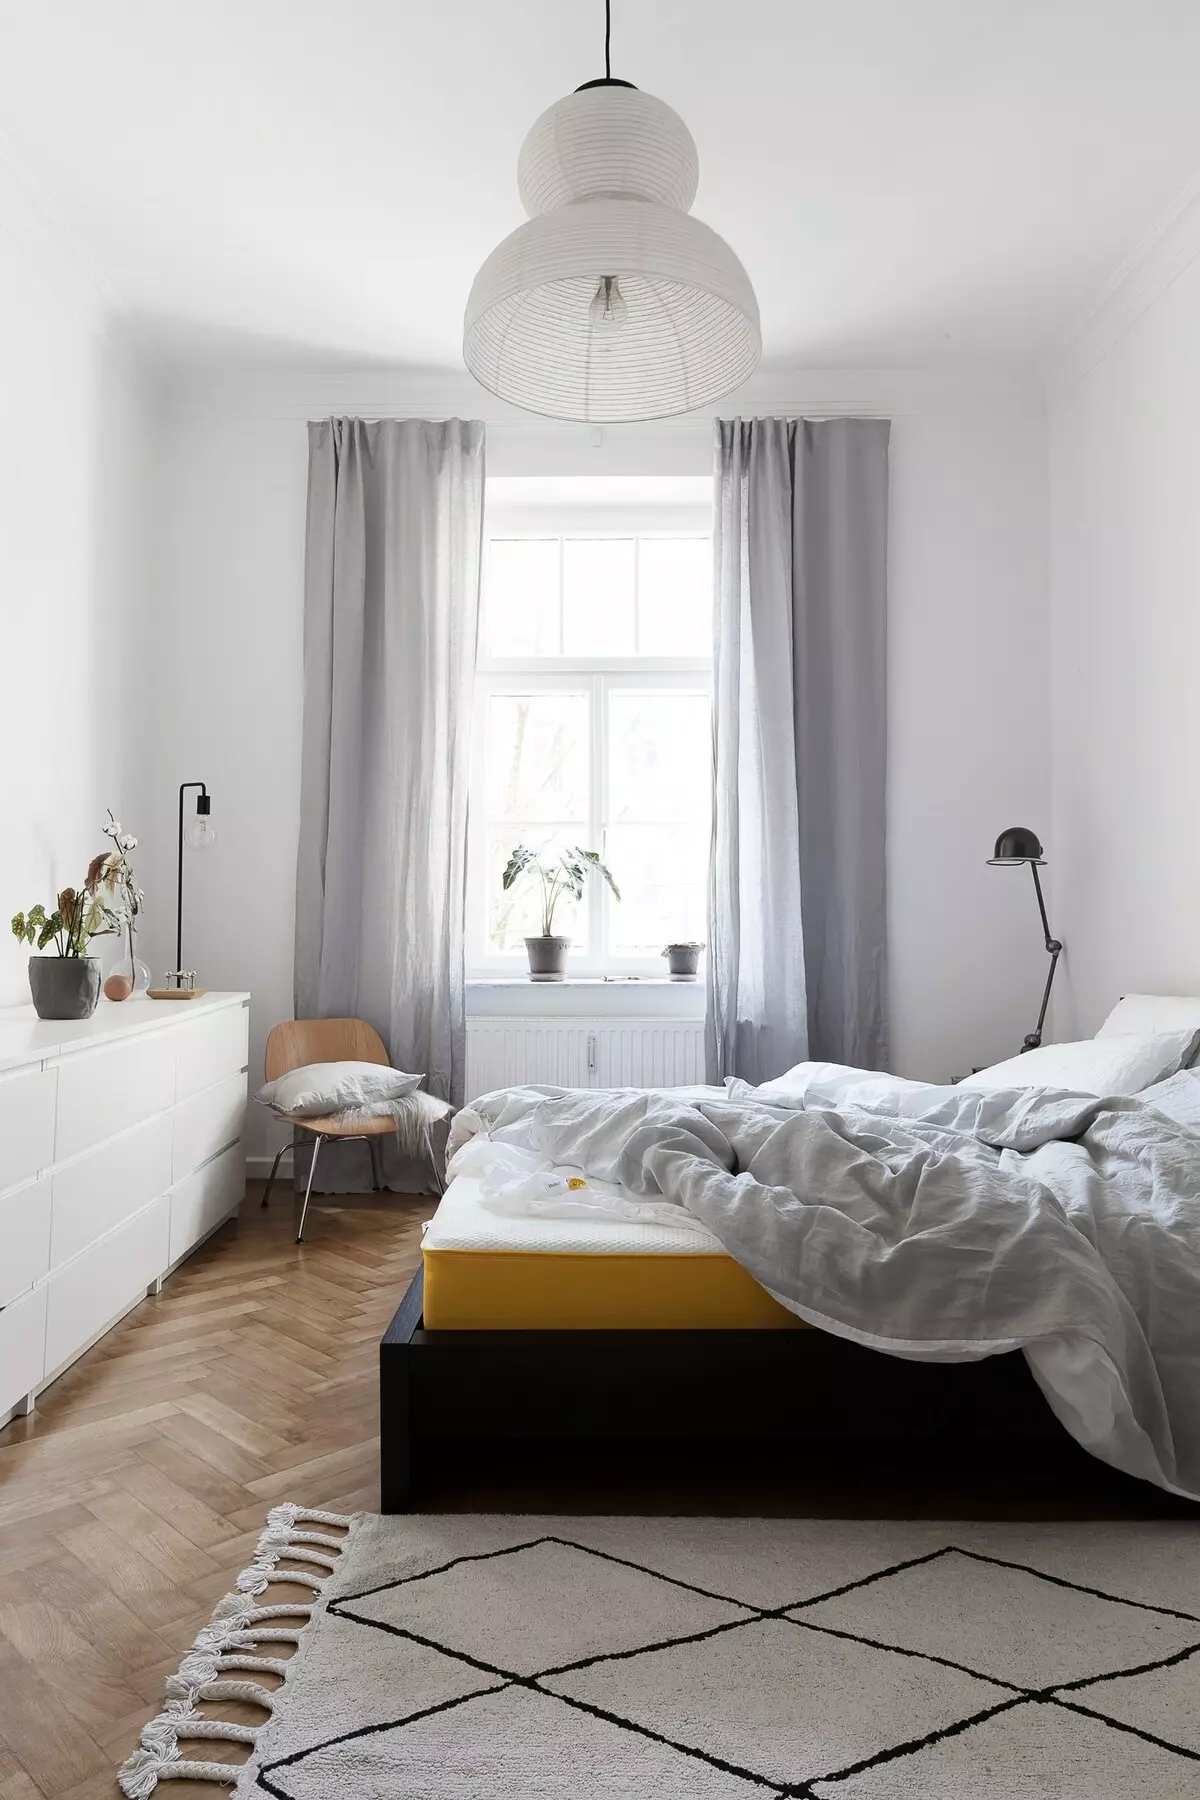 Interior elegante de cuarto de luz con acentos escuros Foto escandinavo estilo